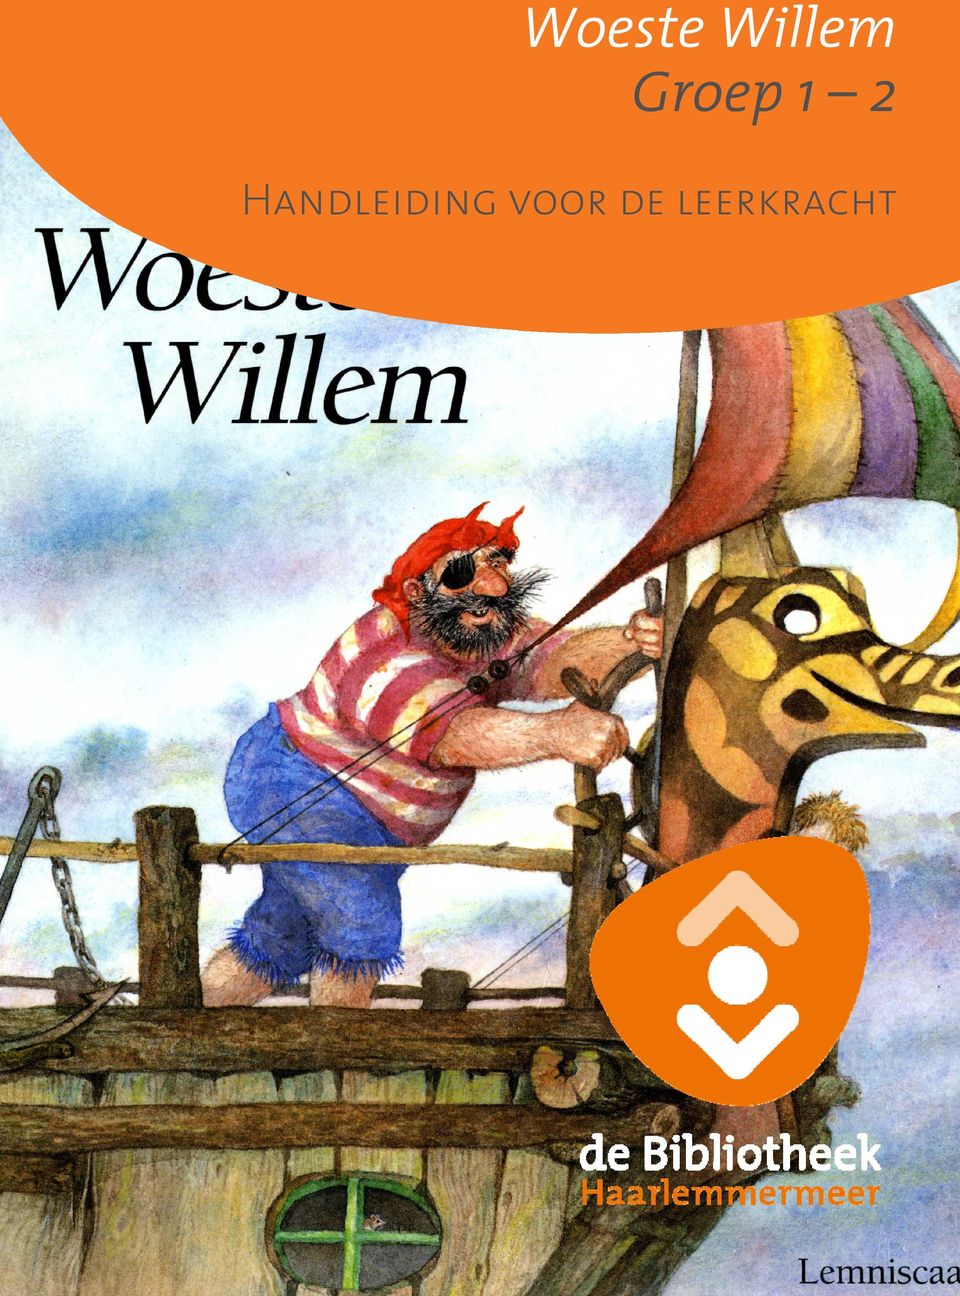 leerkracht Woeste Willem